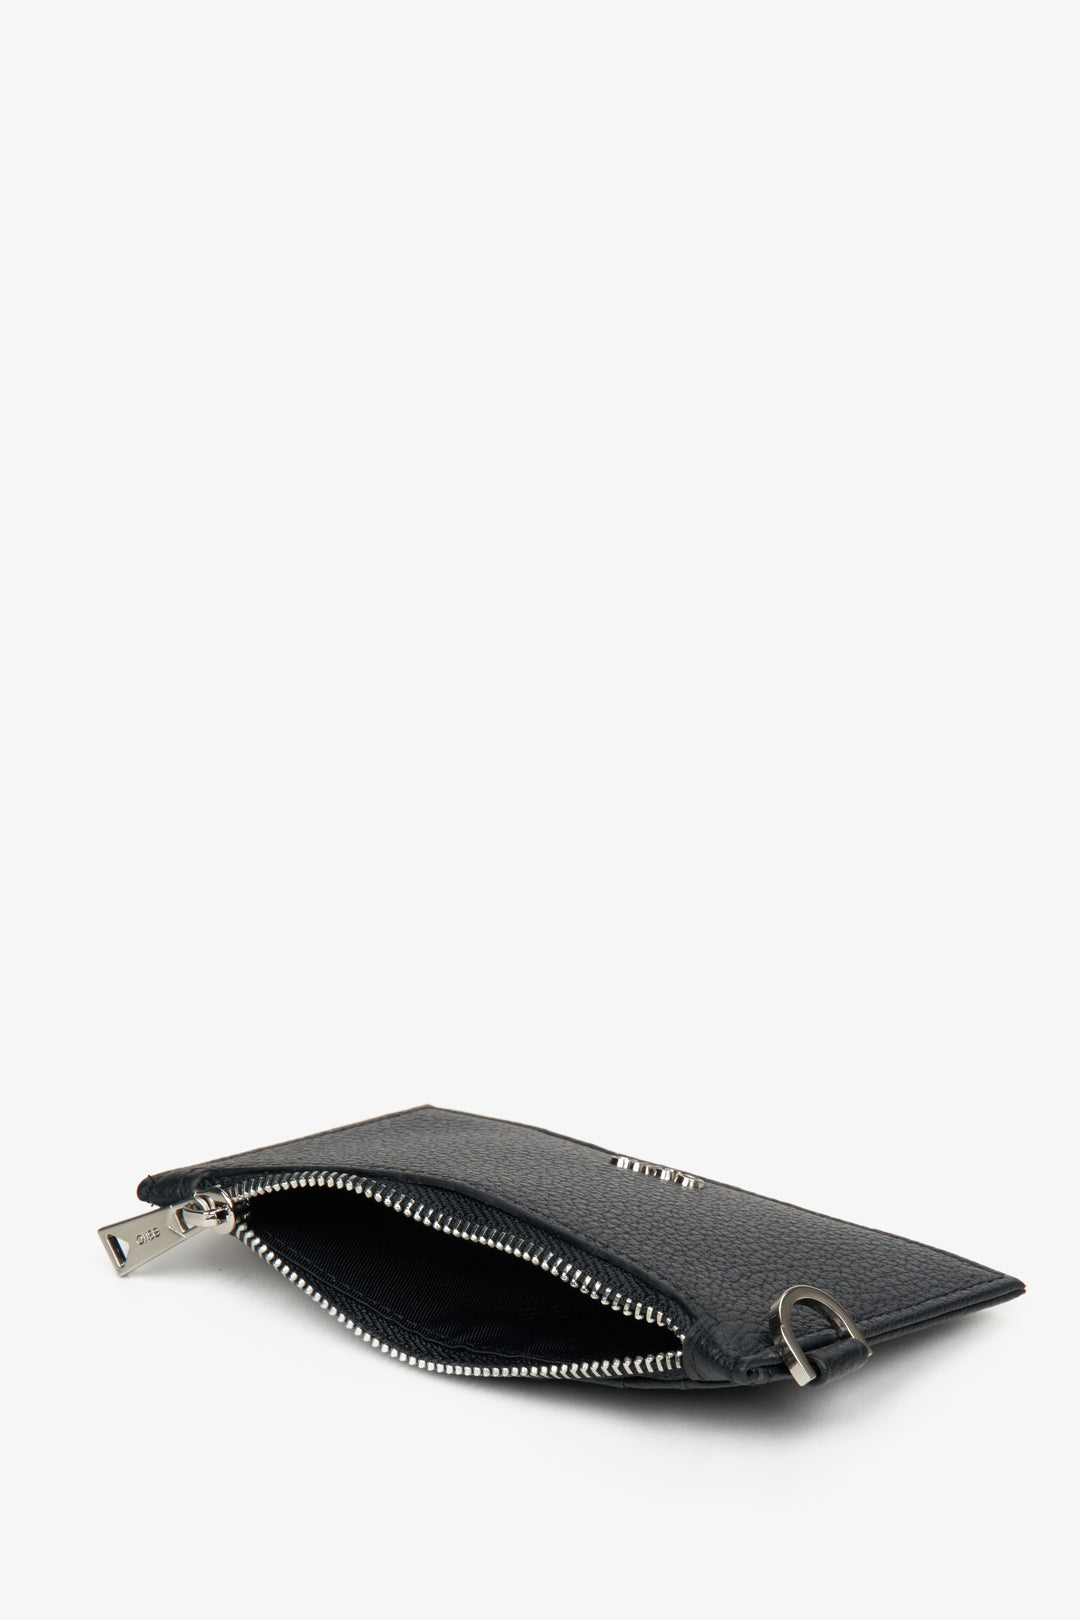 Men's black coin purse wallet by Estro.